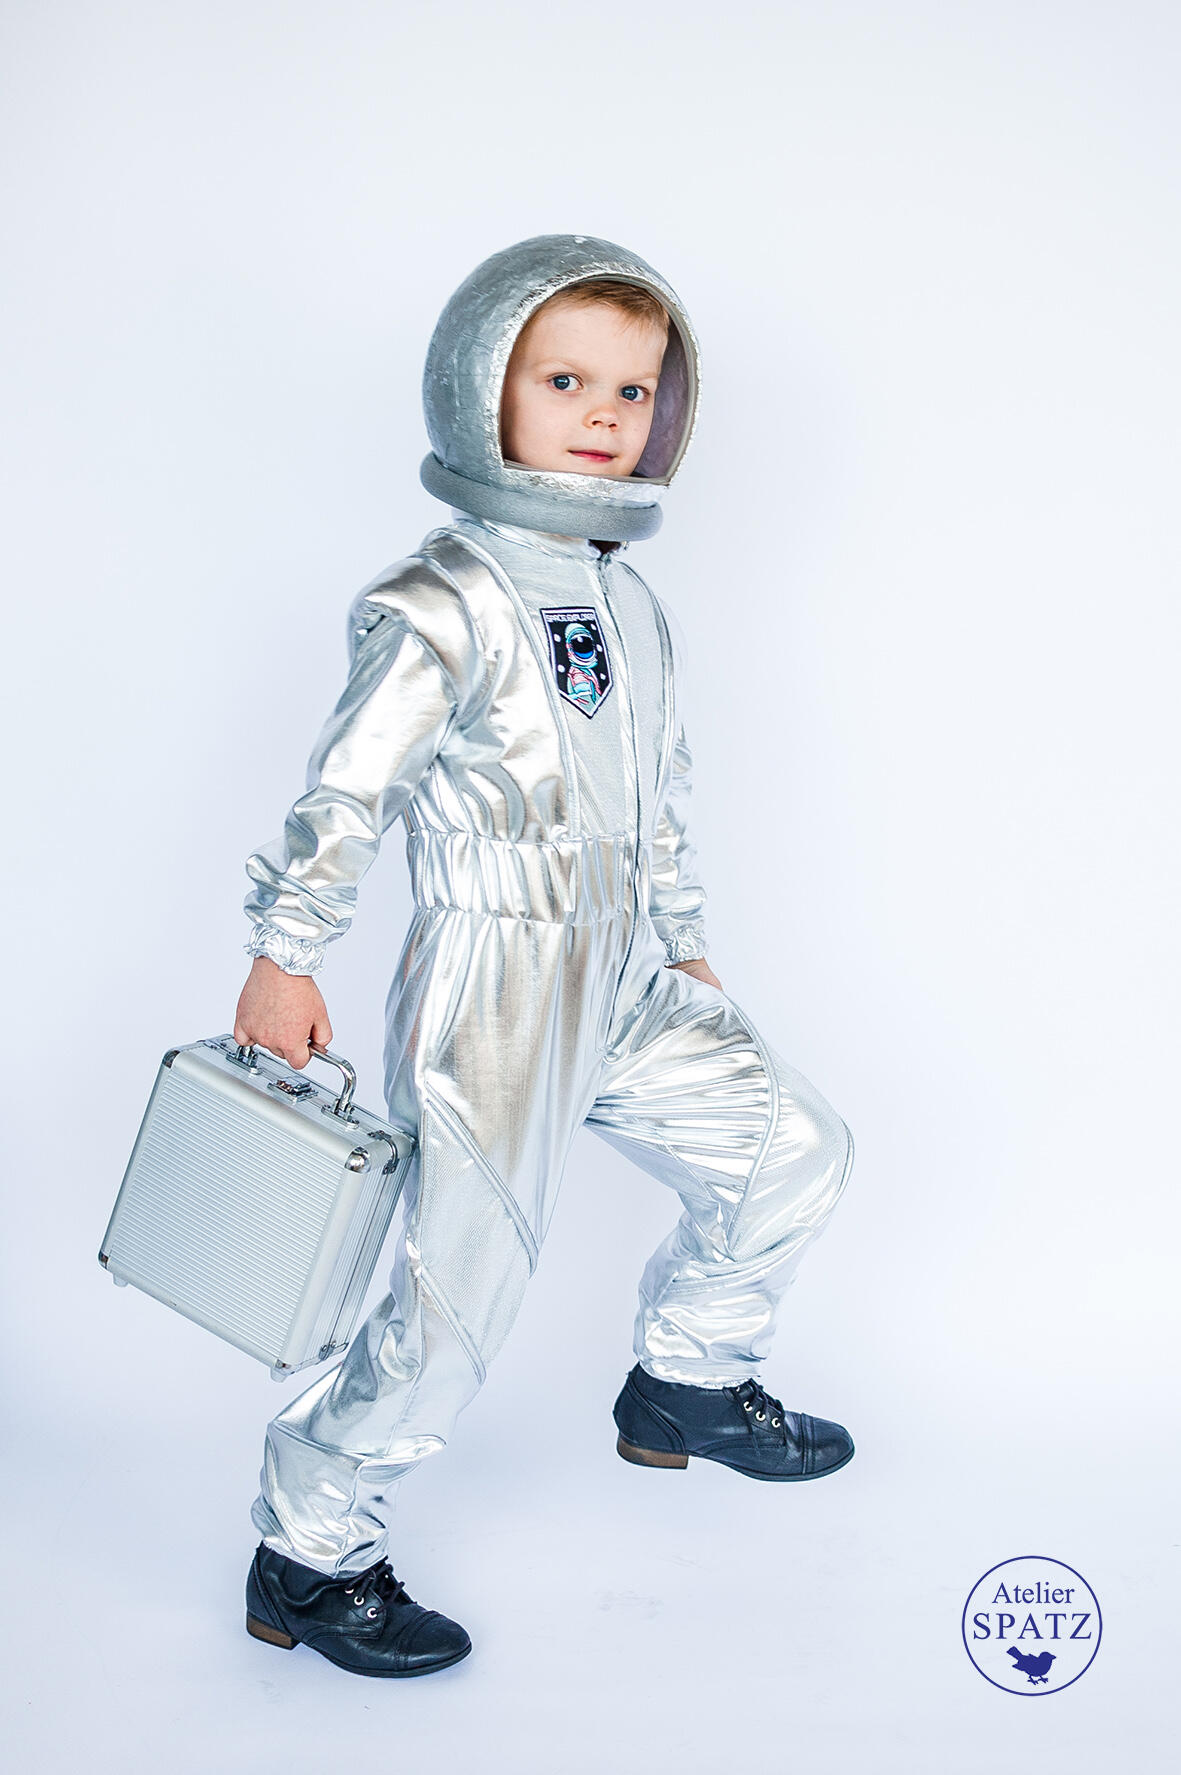 Astronautenanzug als Karnevals-Verkleidung für Kinder 